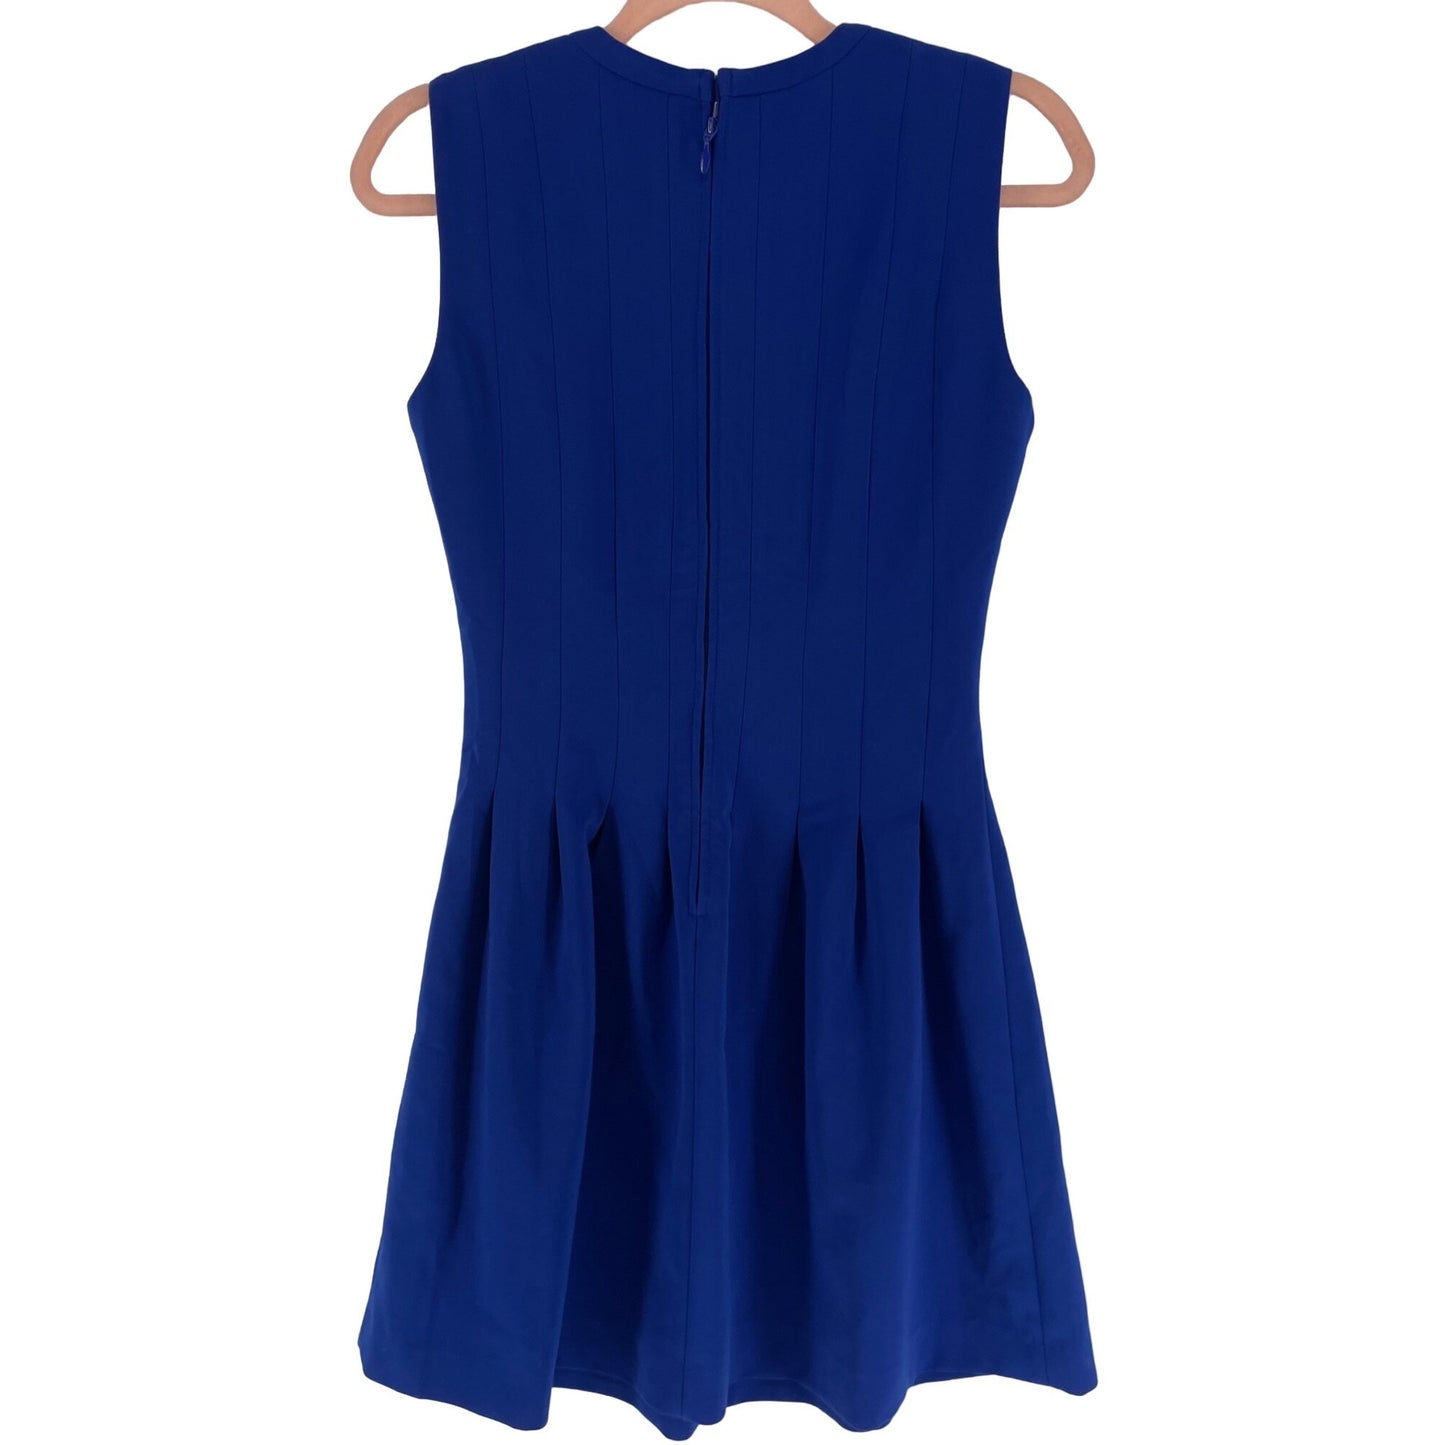 H&M Women's Size 6 Cobalt Blue Pleated Sleeveless A-Line Shift Dress